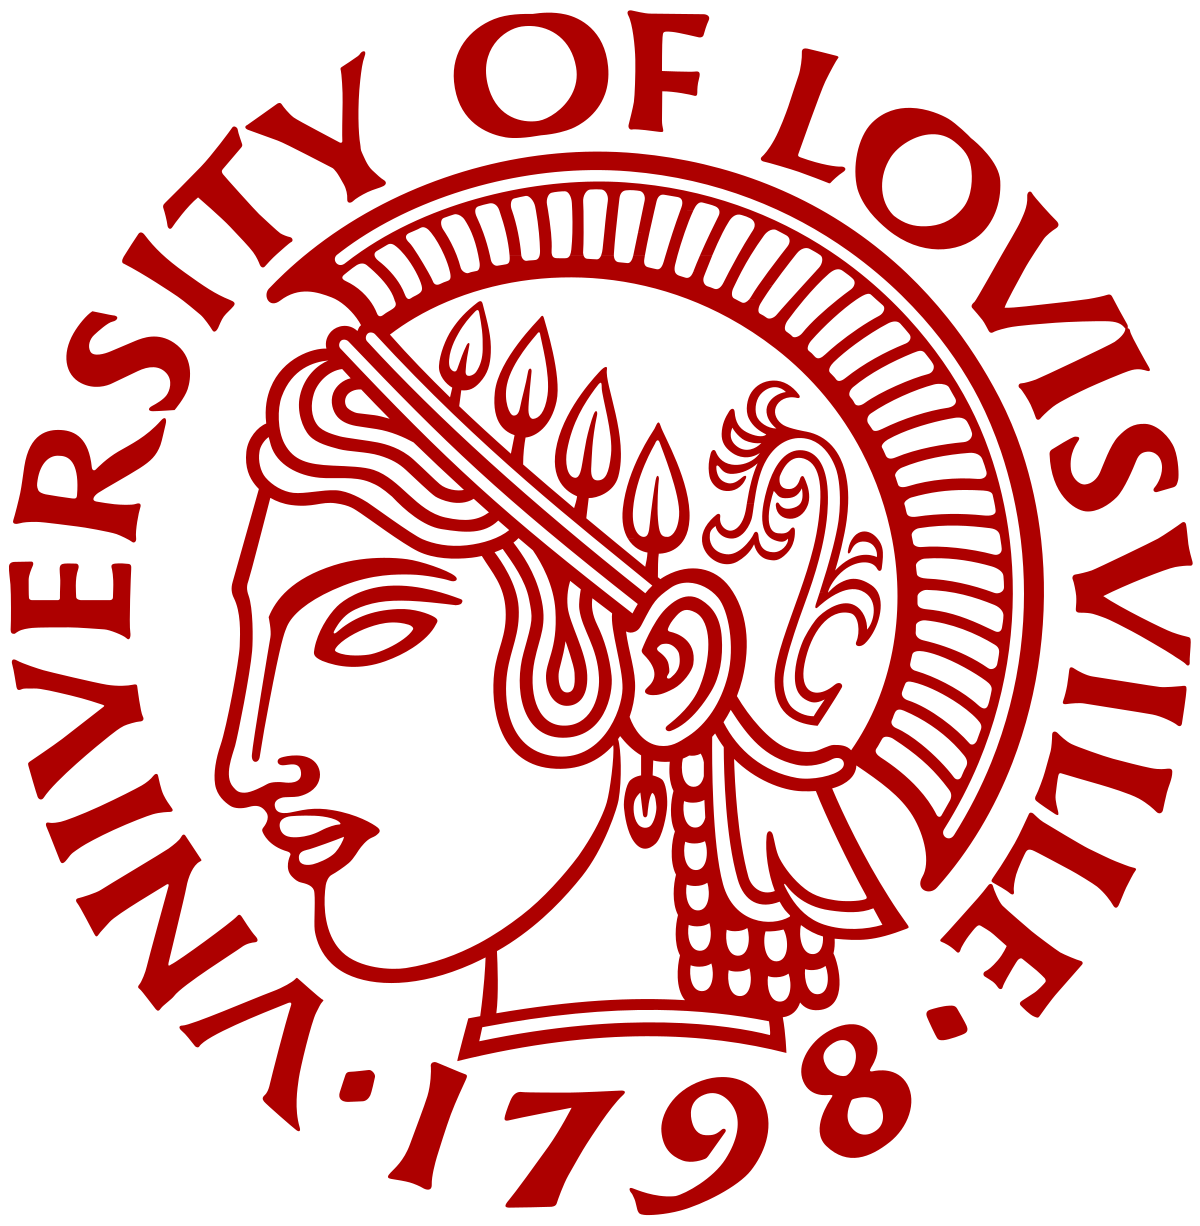 University of Louisville Football Logo - University of Louisville